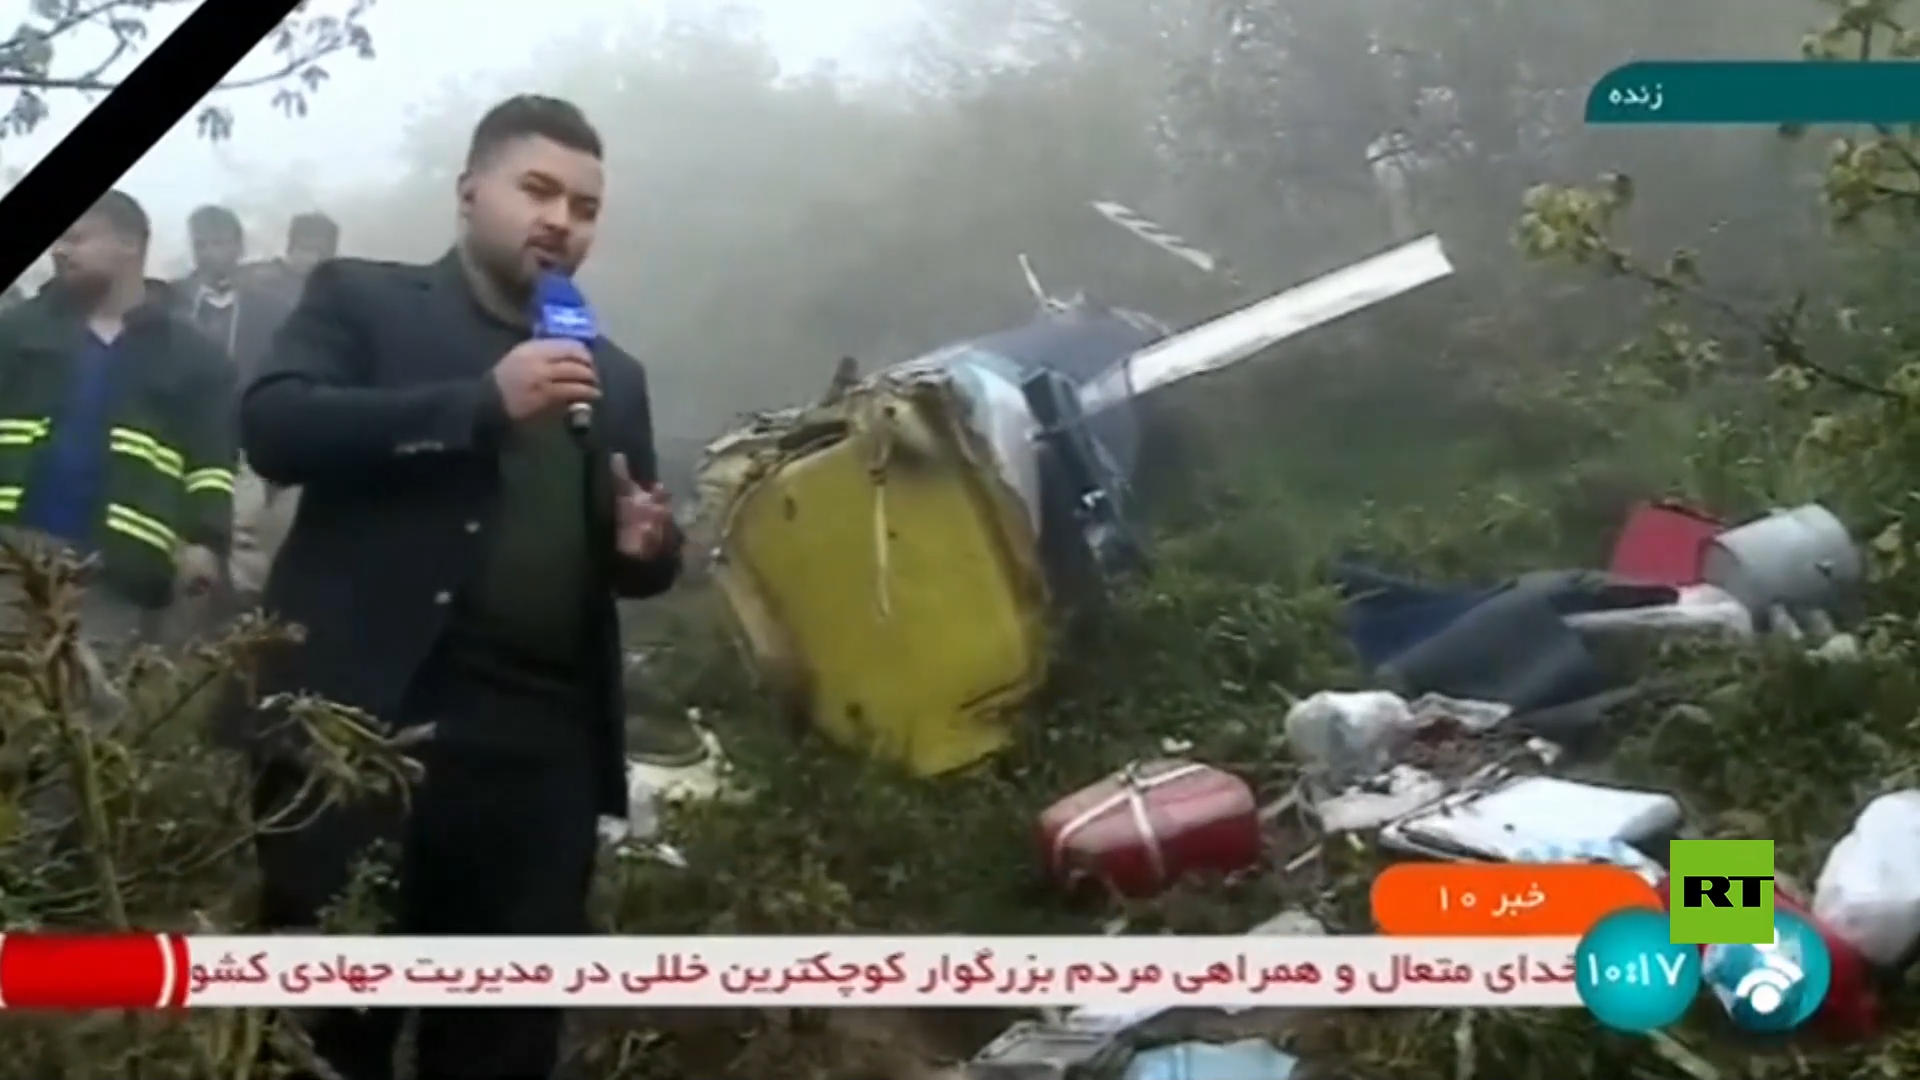 التلفزيون الإيراني يبث لقطات من موقع تحطم مروحية الرئيس إبراهيم رئيسي